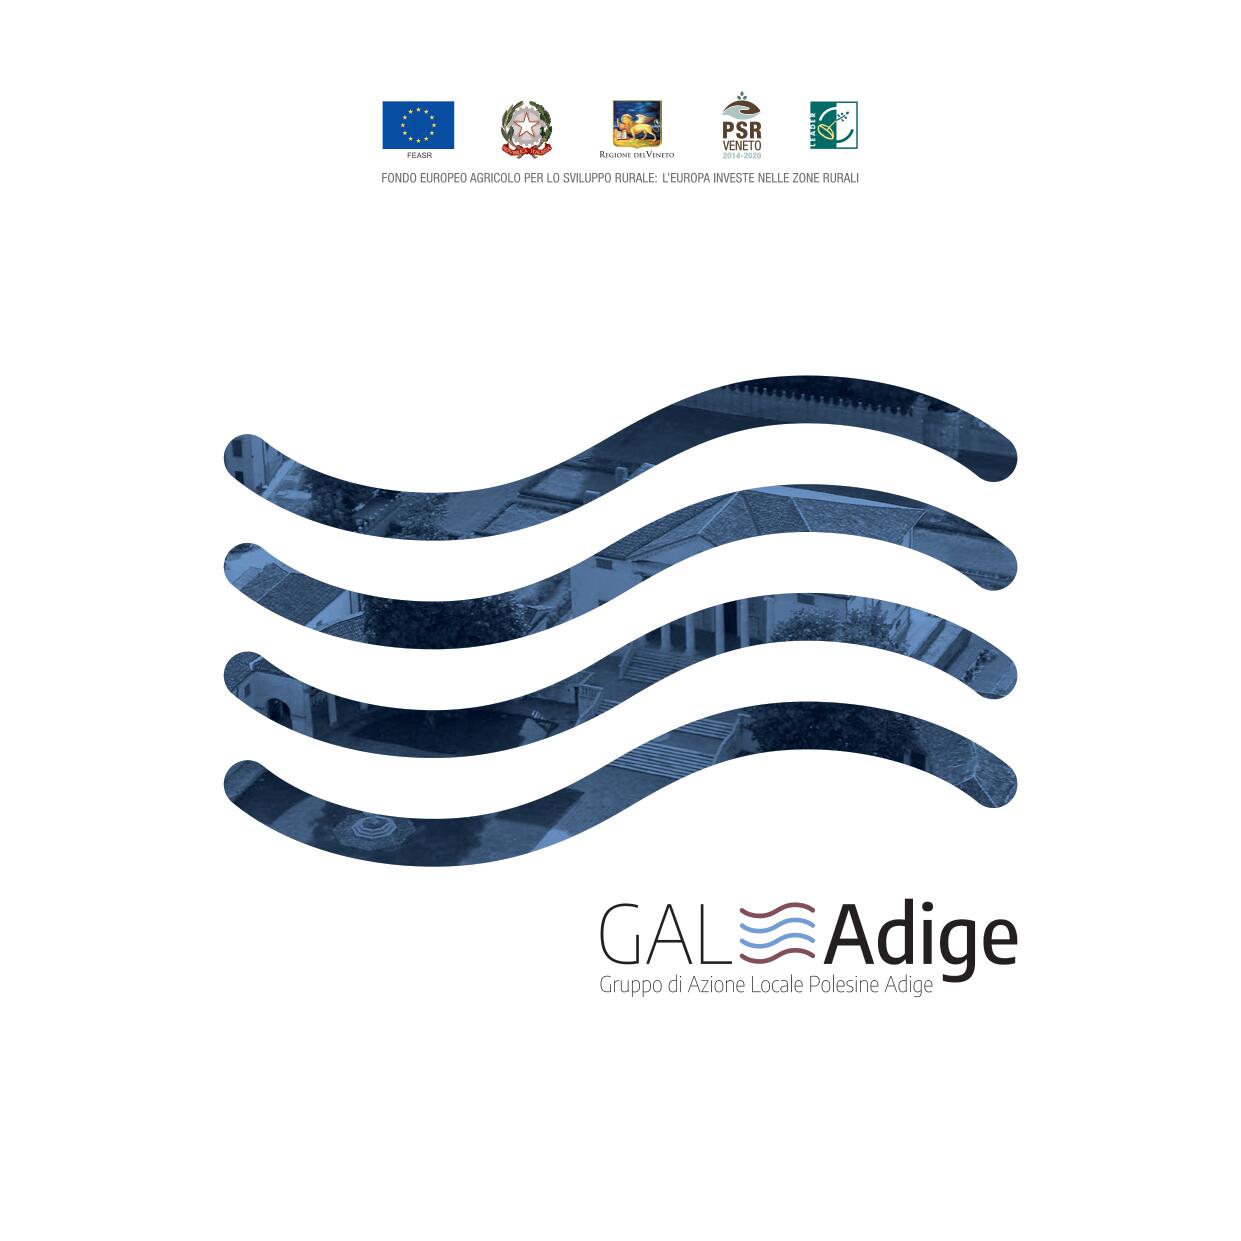 GAL Adige Brochure